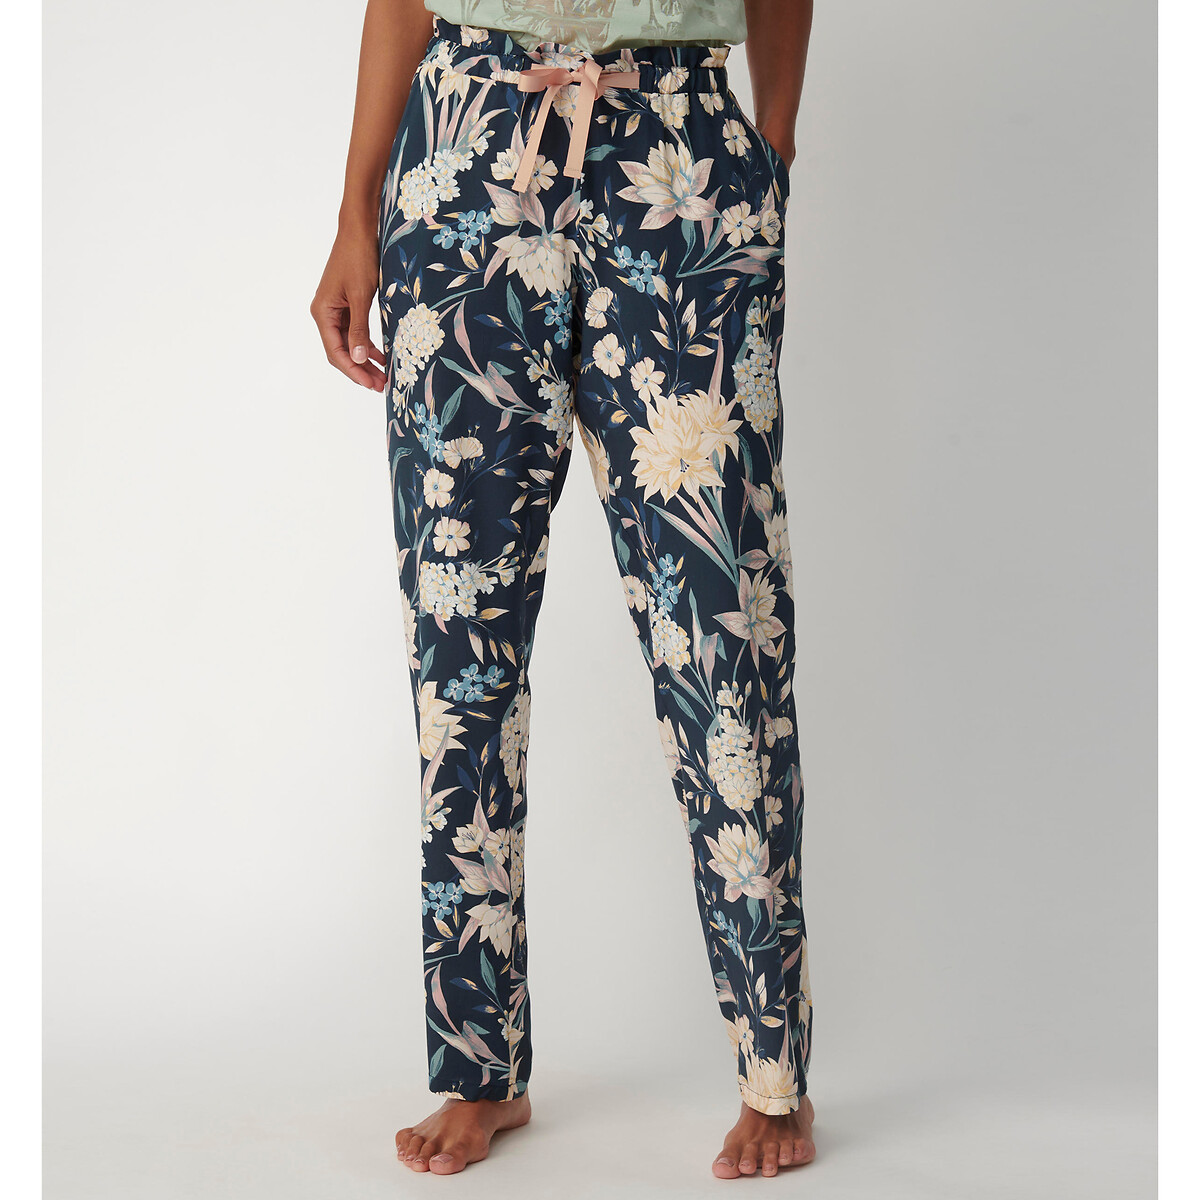 Visiter la boutique TriumphTriumph Mix & Match Trouser Flannel Print Bas de Pyjama Femme 